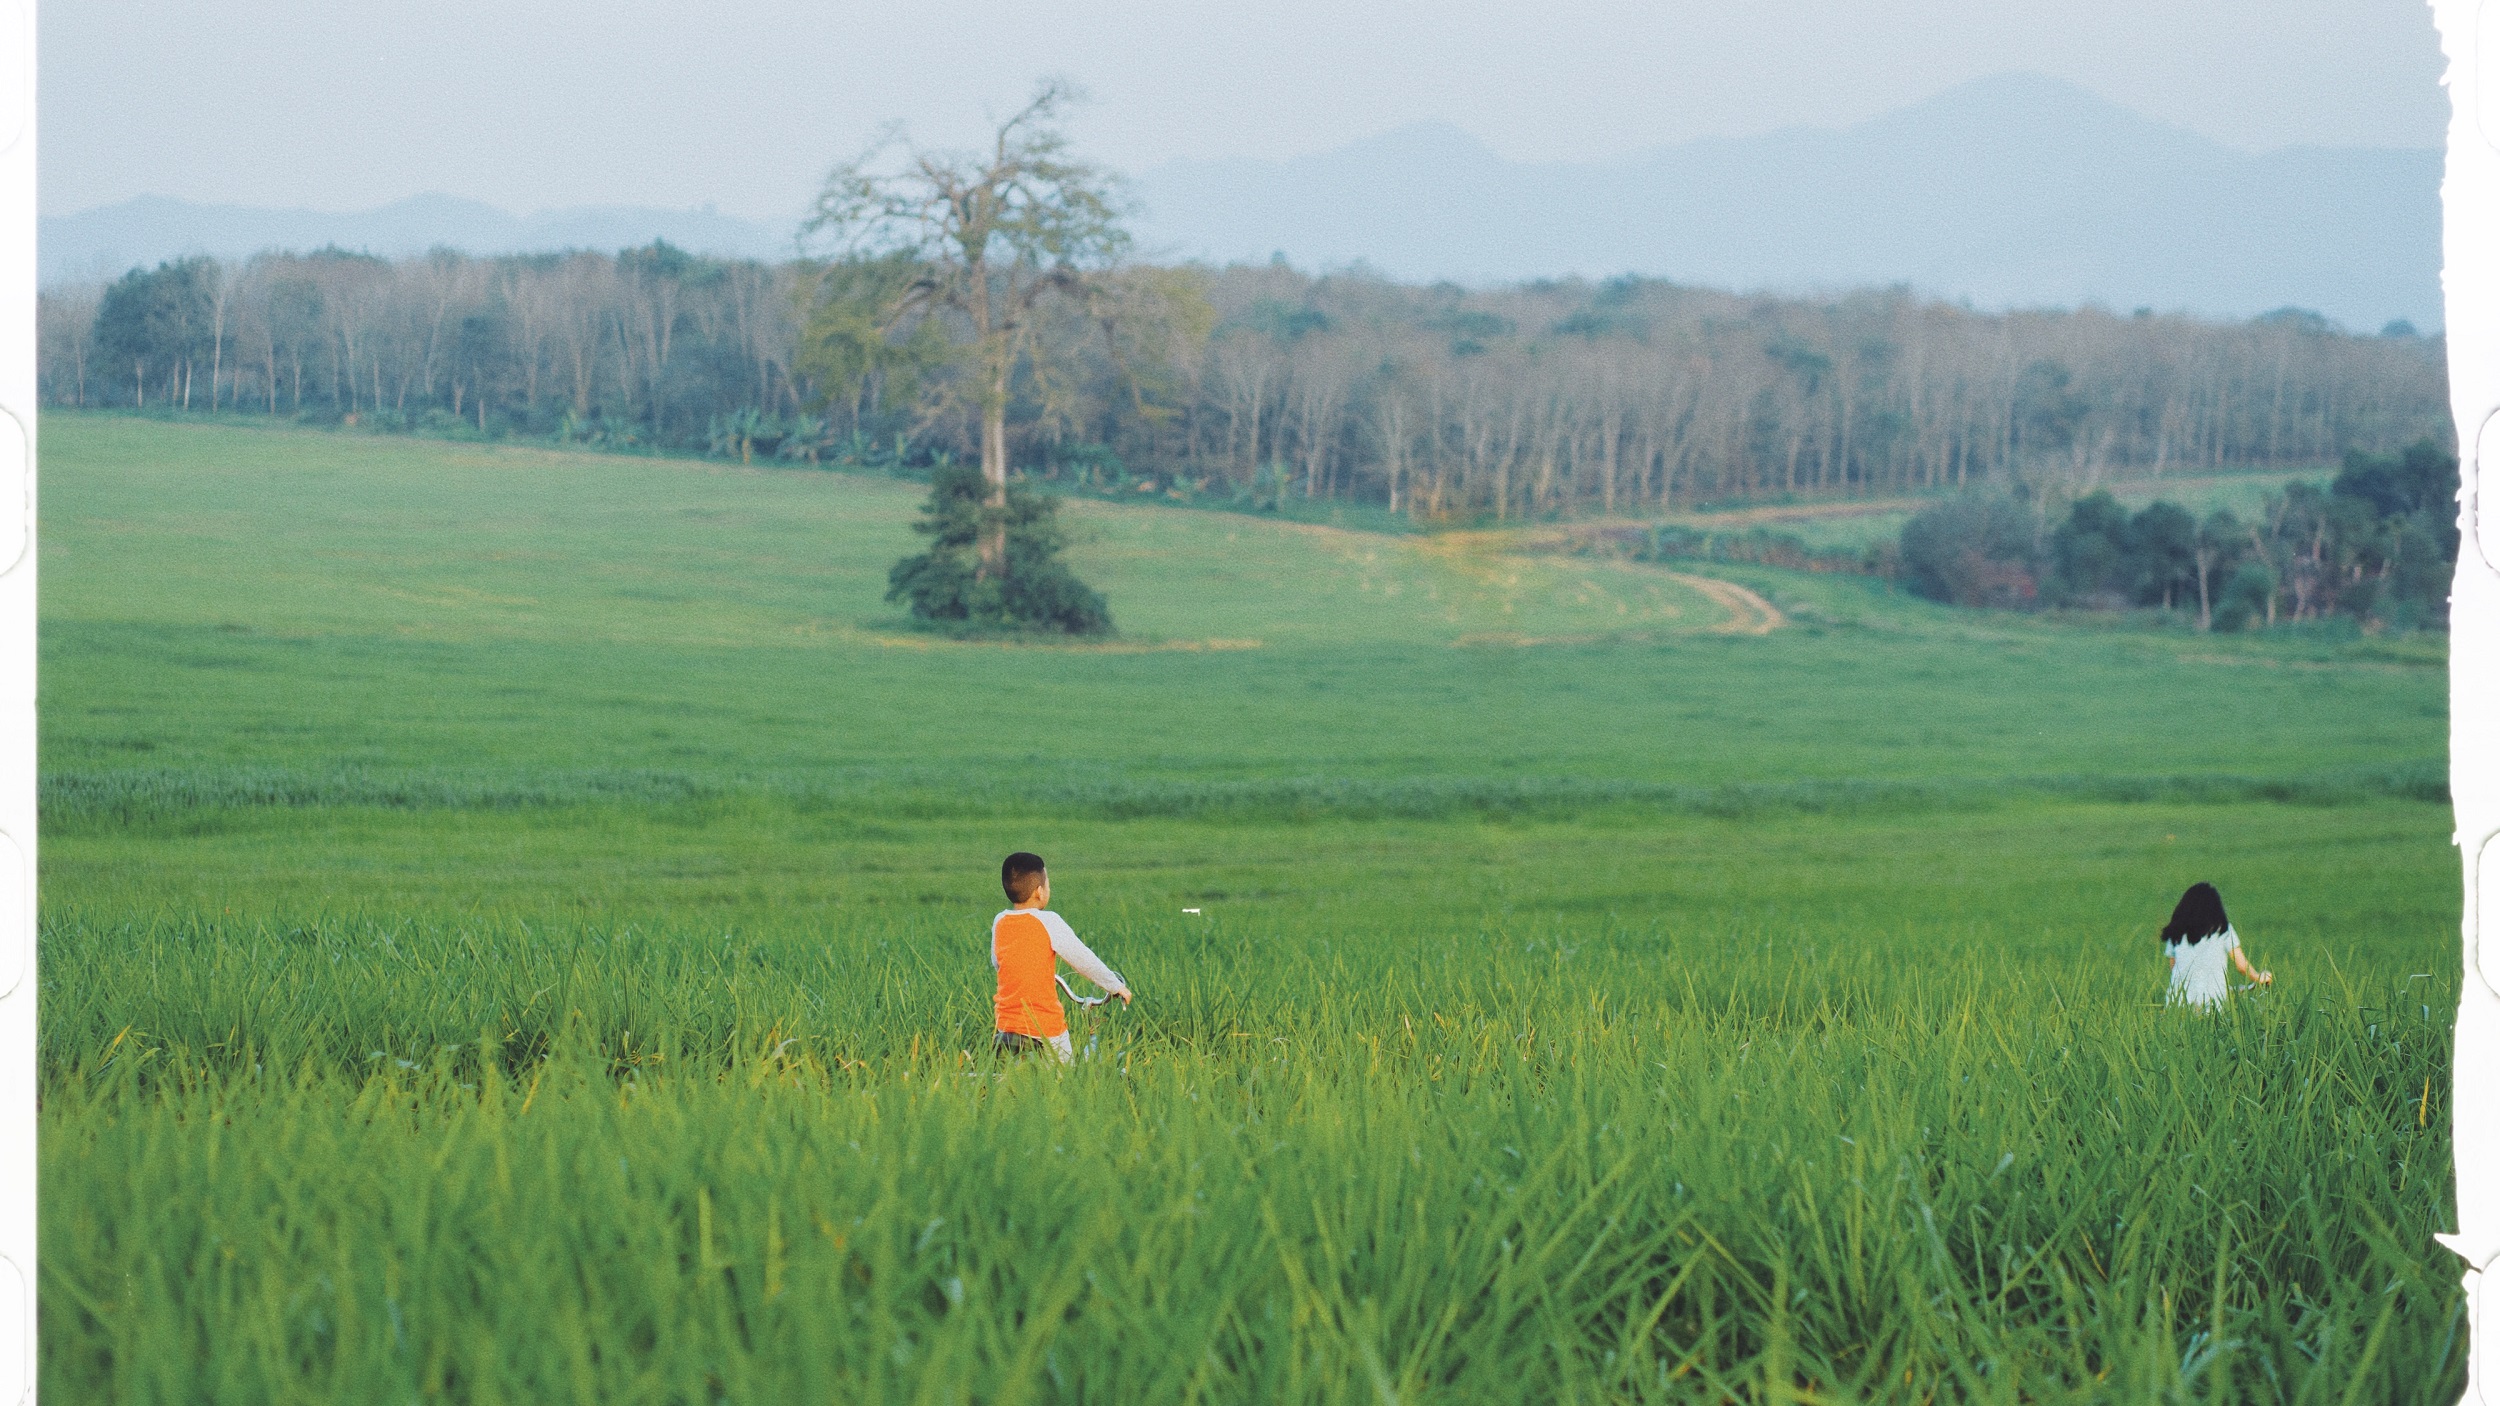 Du xuân, check-in đồng cỏ rộng hàng ngàn ha xanh mướt “đẹp như mơ” ở Nghĩa Đàn, Nghệ An- Ảnh 3.